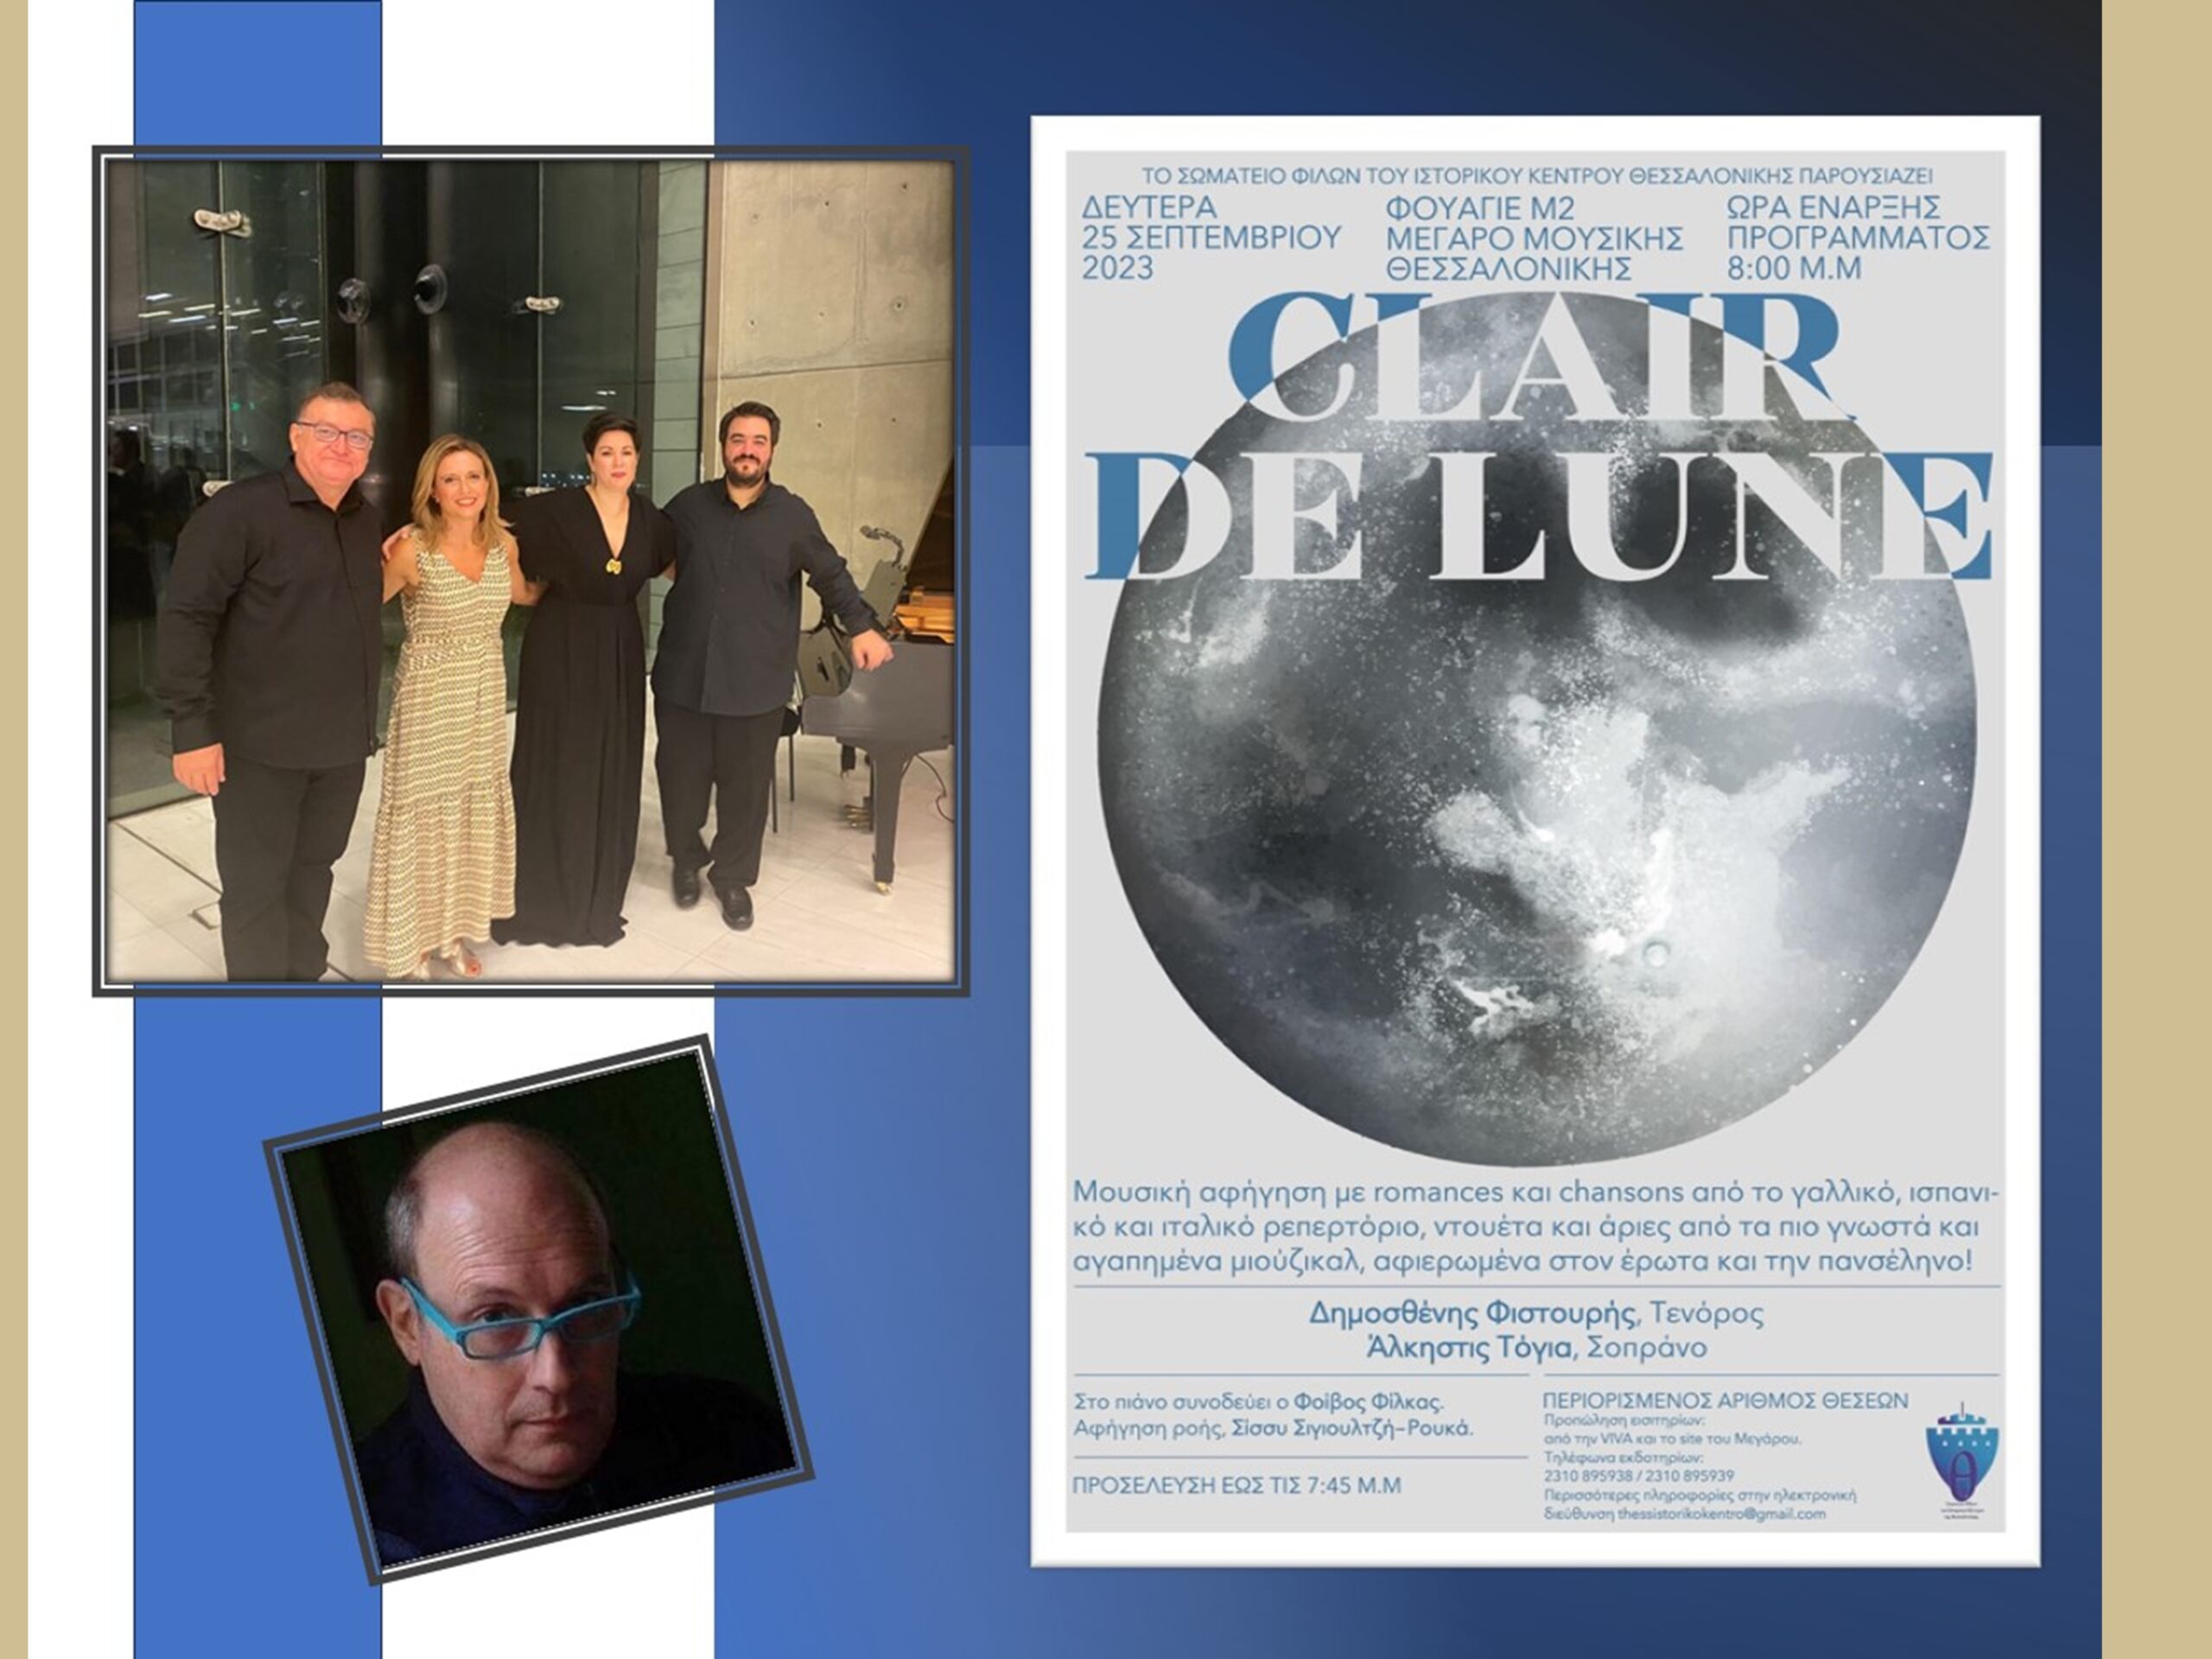 Clair de Lune μουσικοαφηγηματική συναυλία